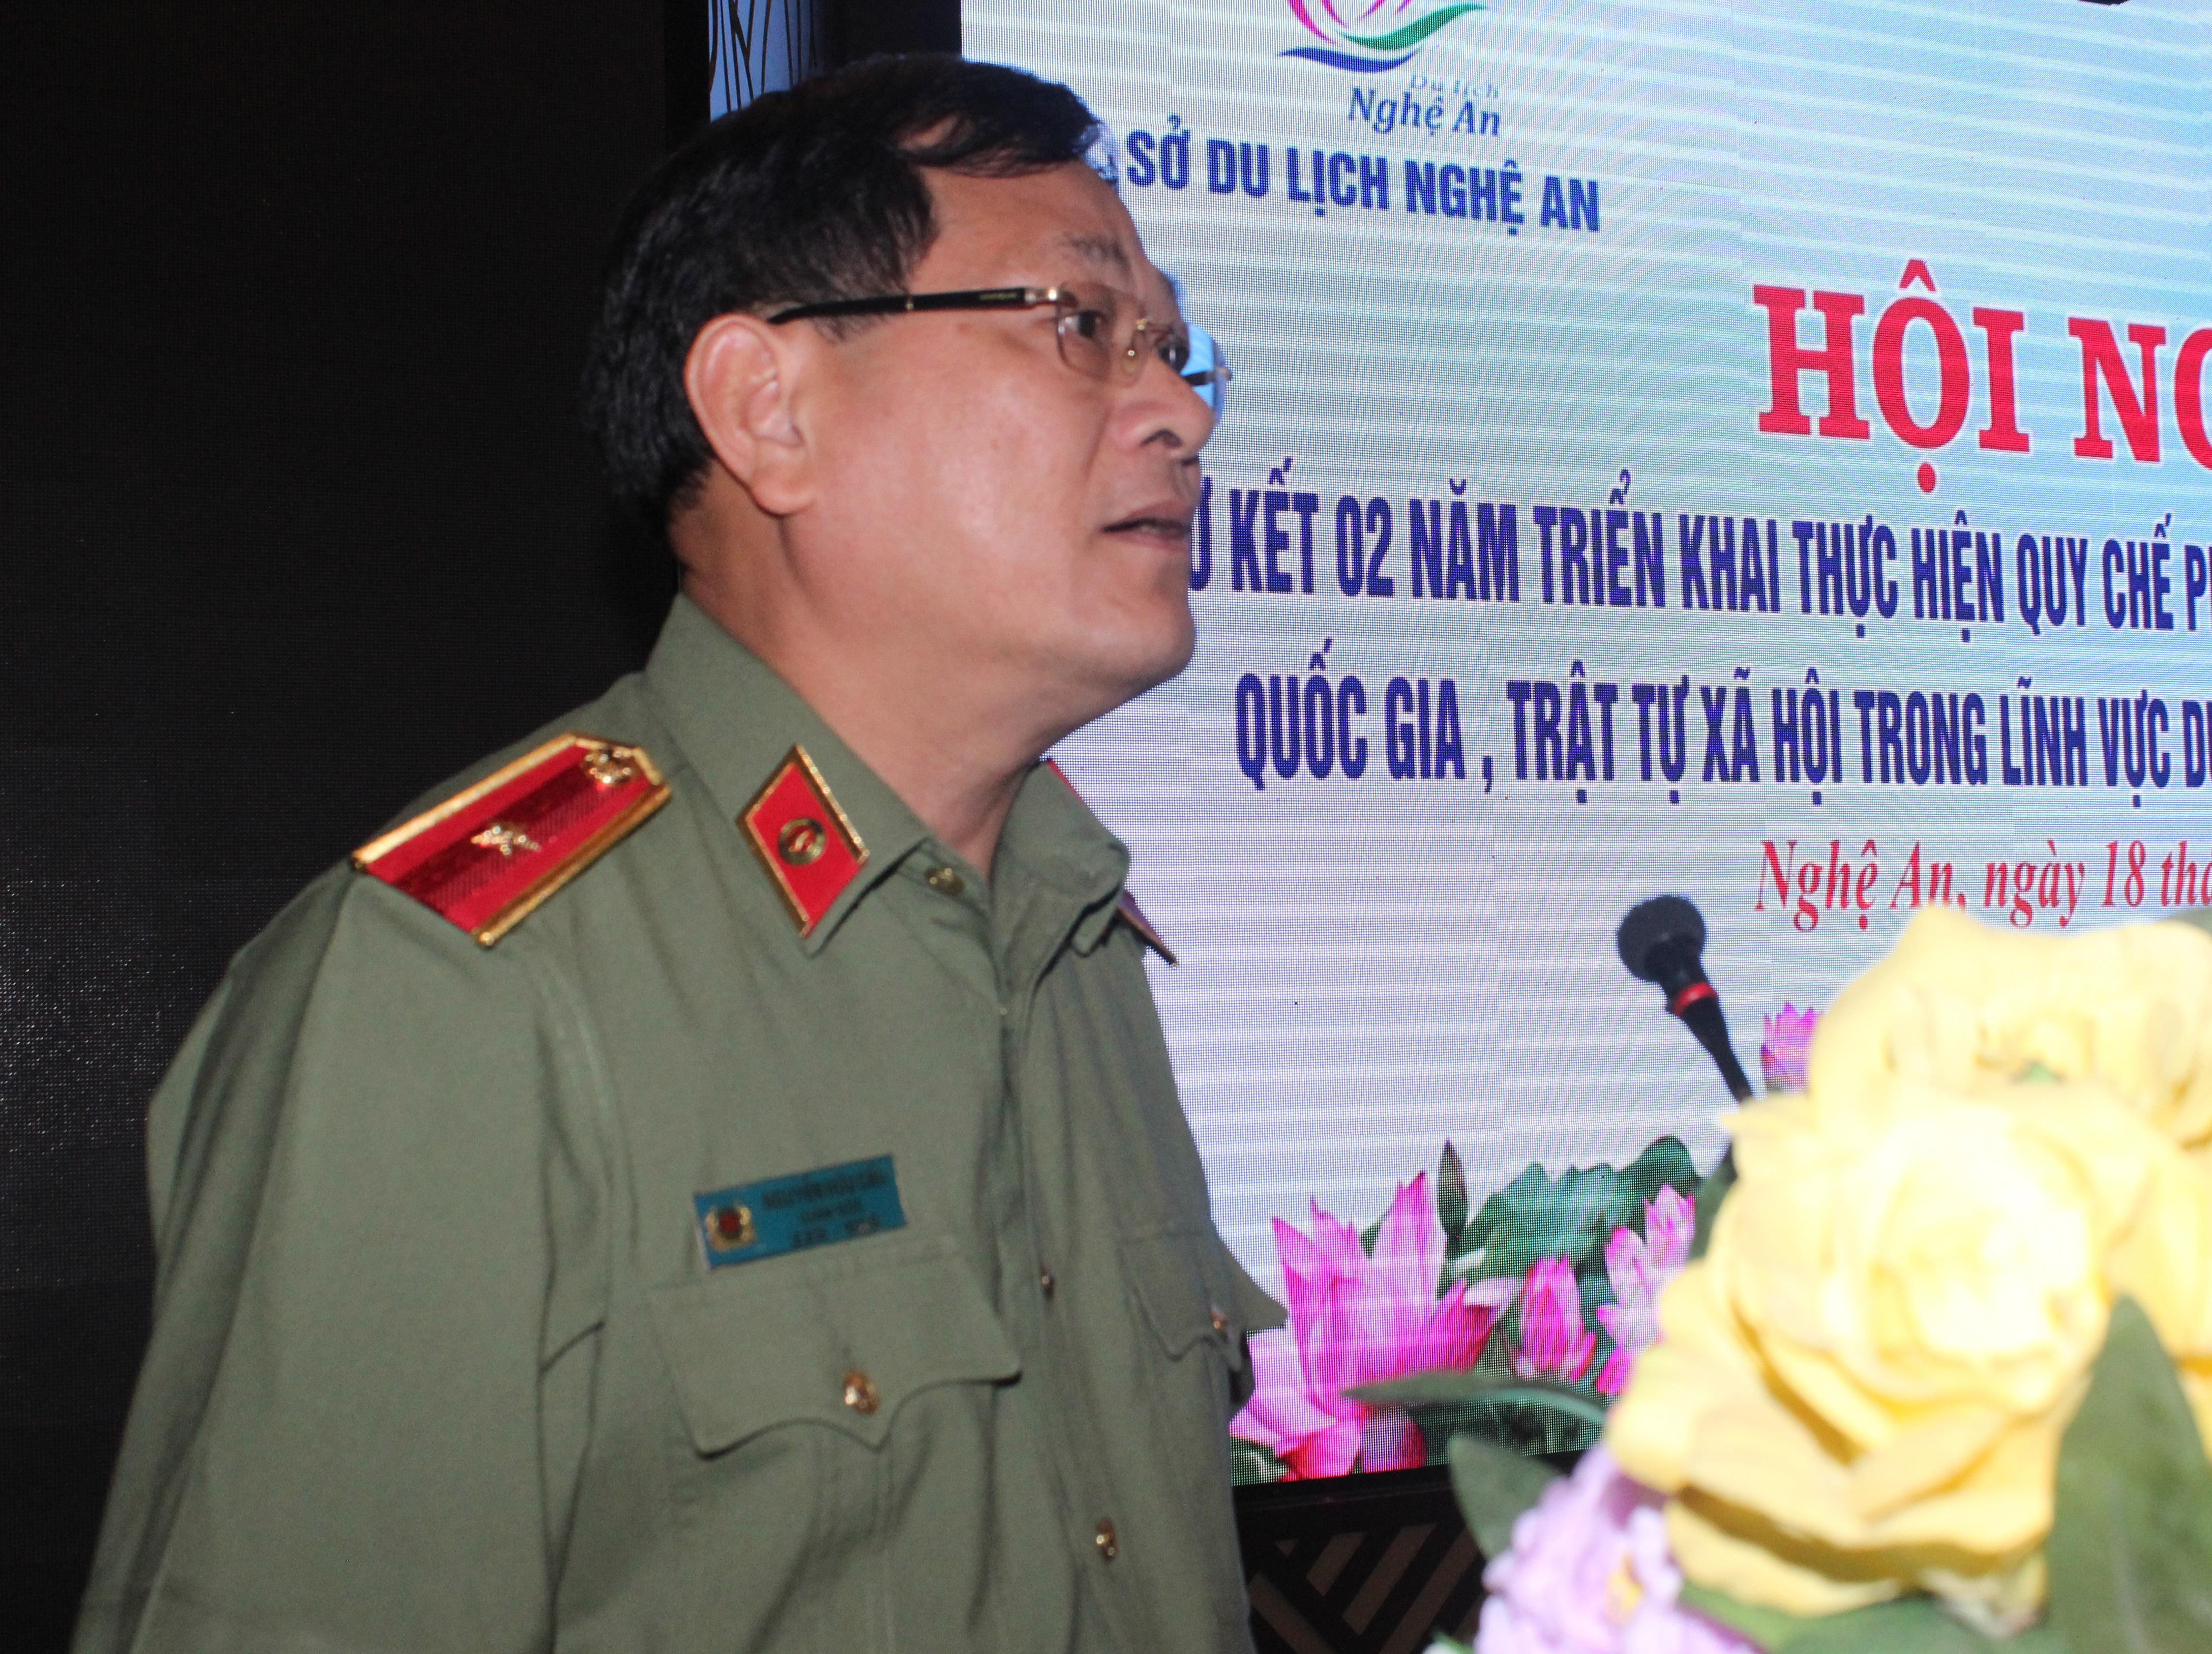 Thiếu tướng Nguyễn Hữu Cầu